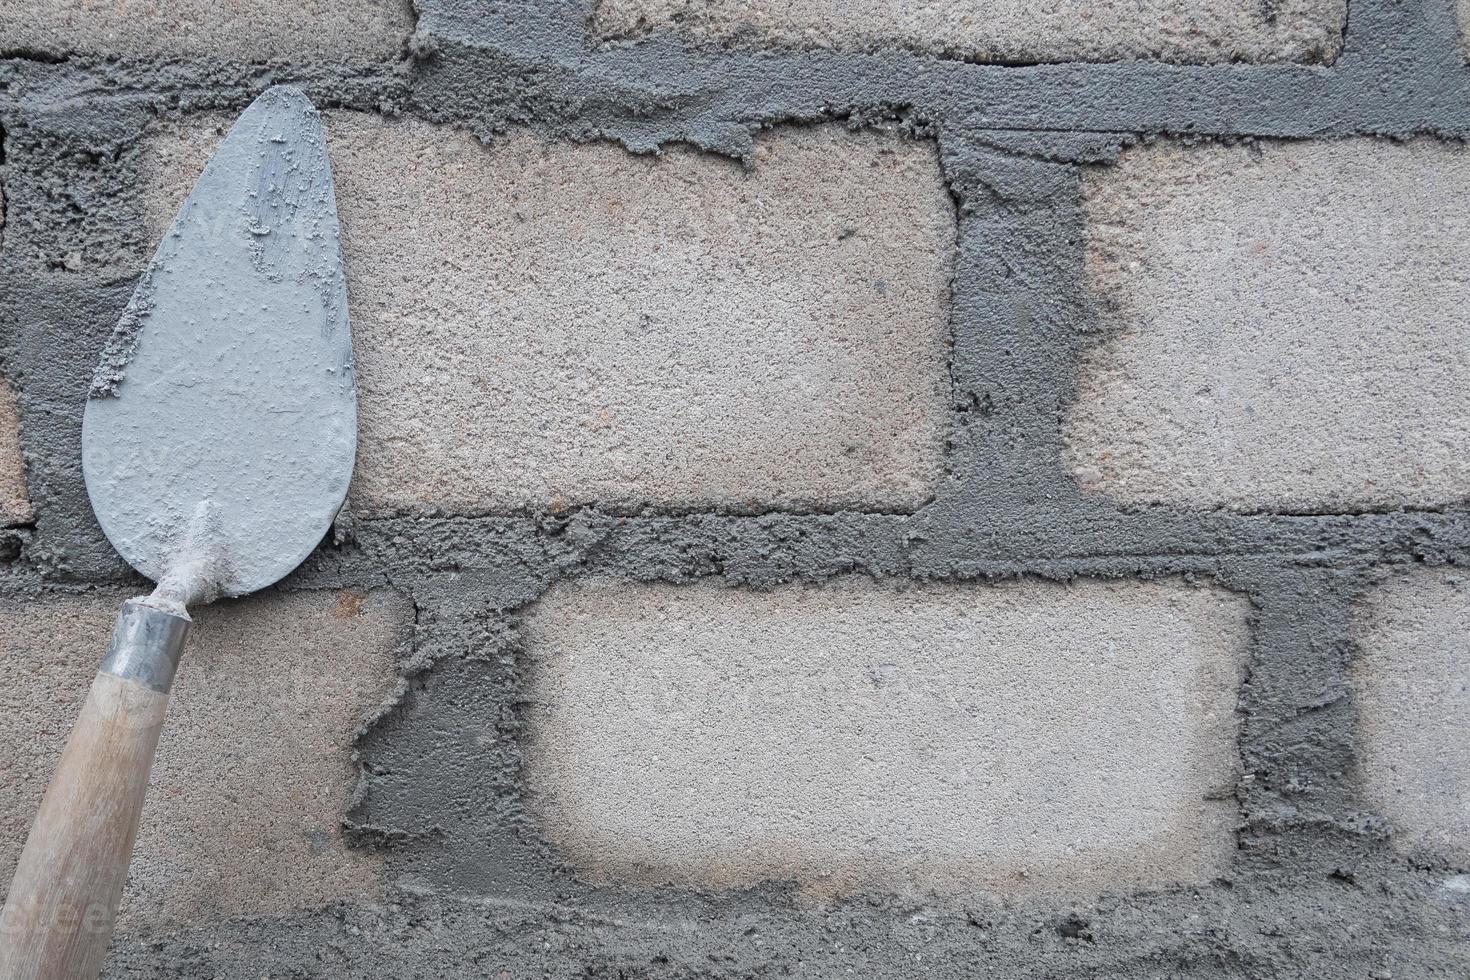 selectivamente atención en el sucio cemento cuchara porque eso es usado a Instalar en pc ladrillos, en indonesio el cemento cuchara es llamado cetok, suave atención foto